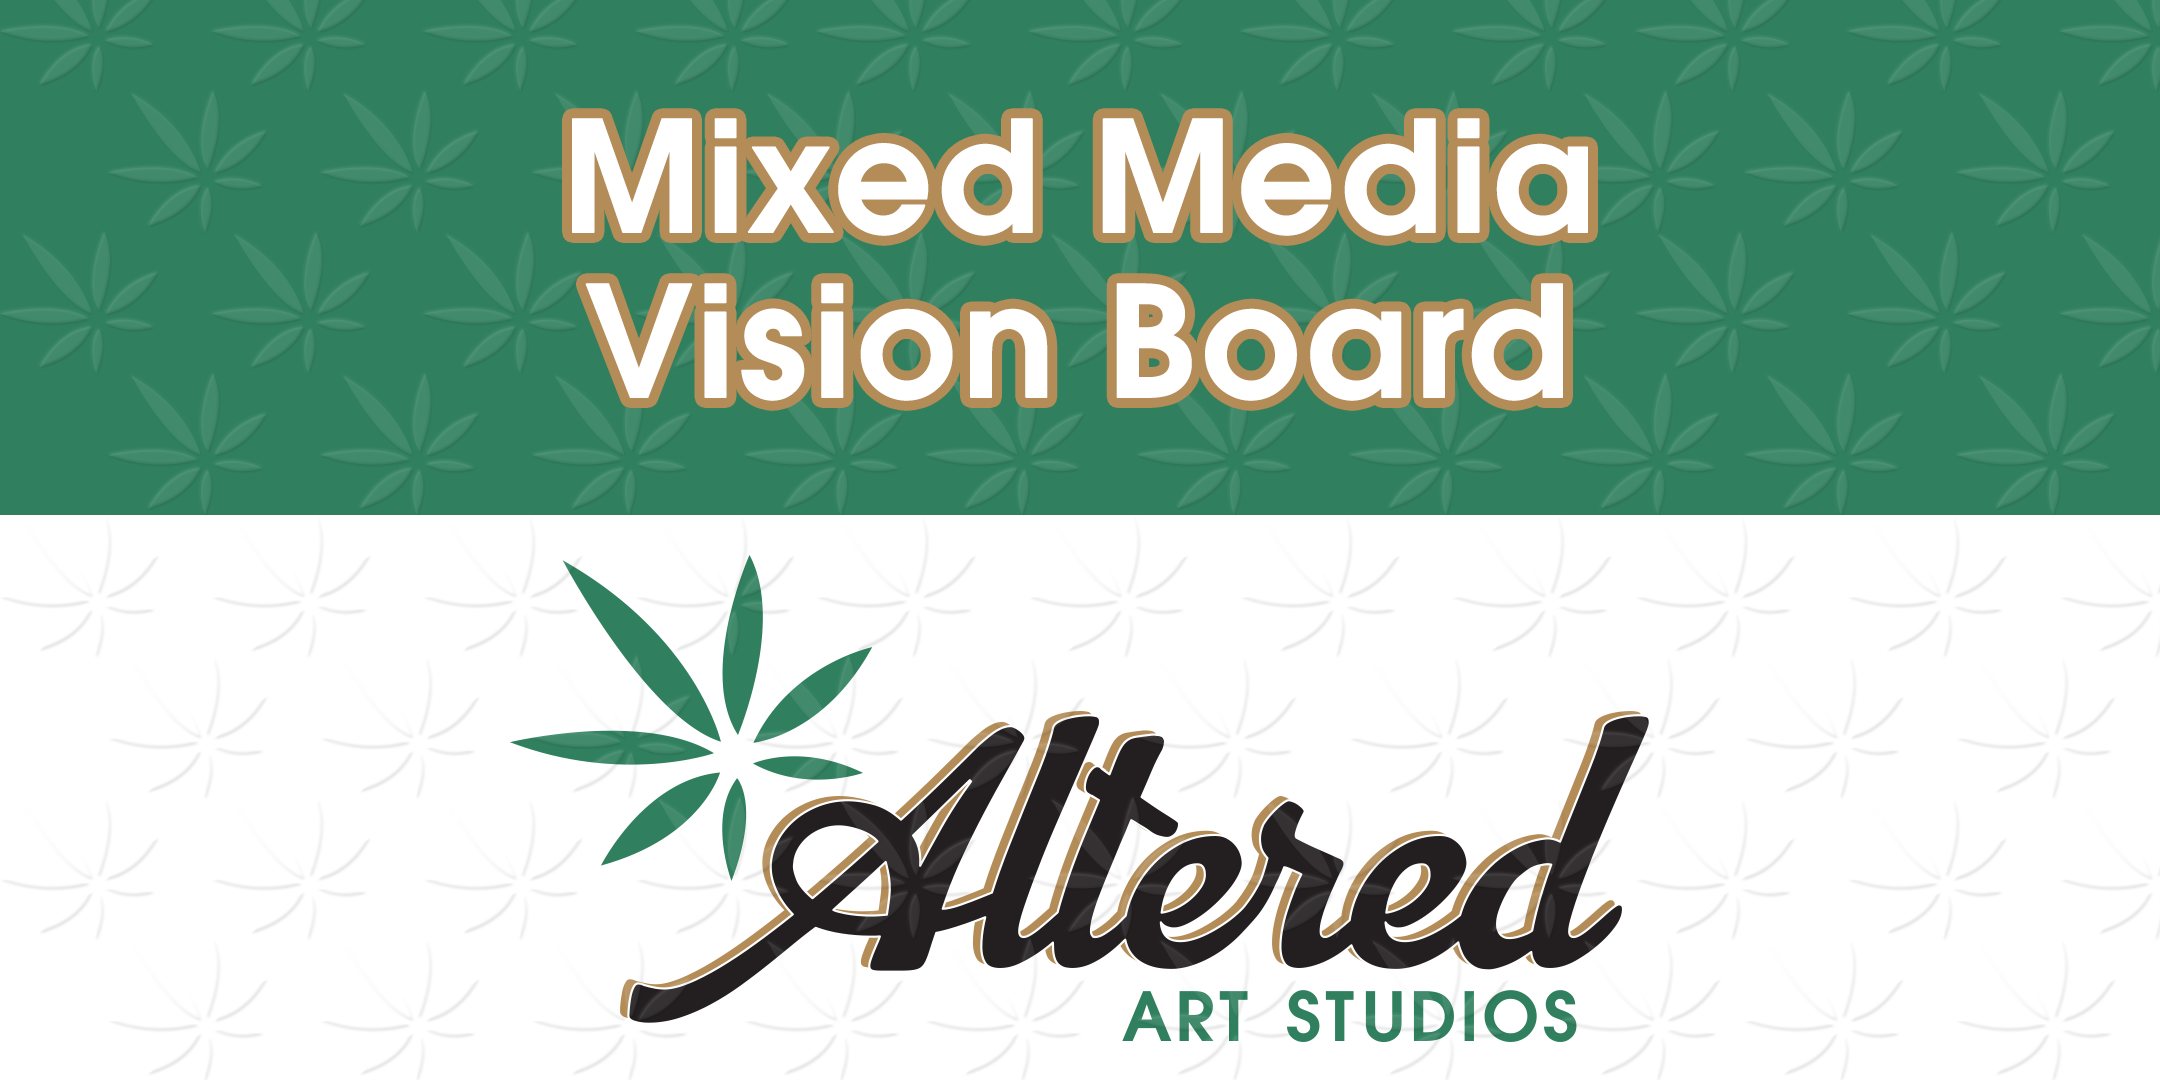 Mixed Media Vision Board